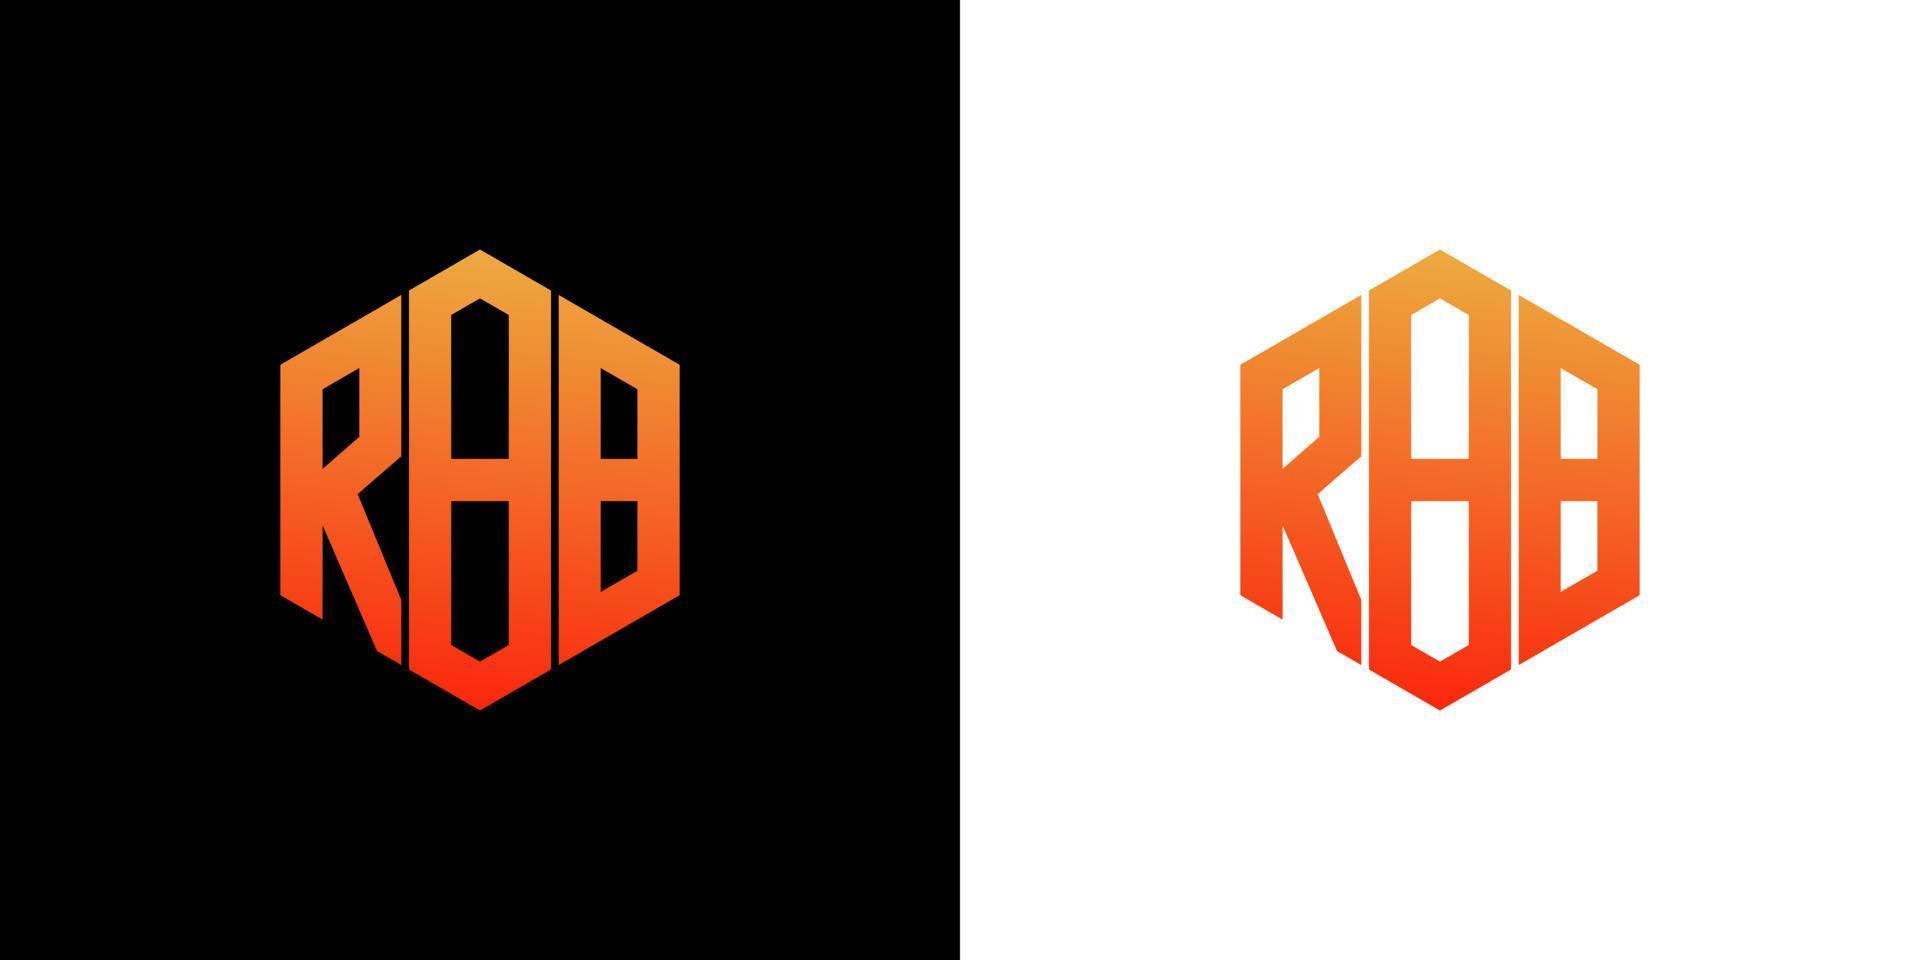 rbb brief logo ontwerp veelhoek monogram vector pictogrammalplaatje